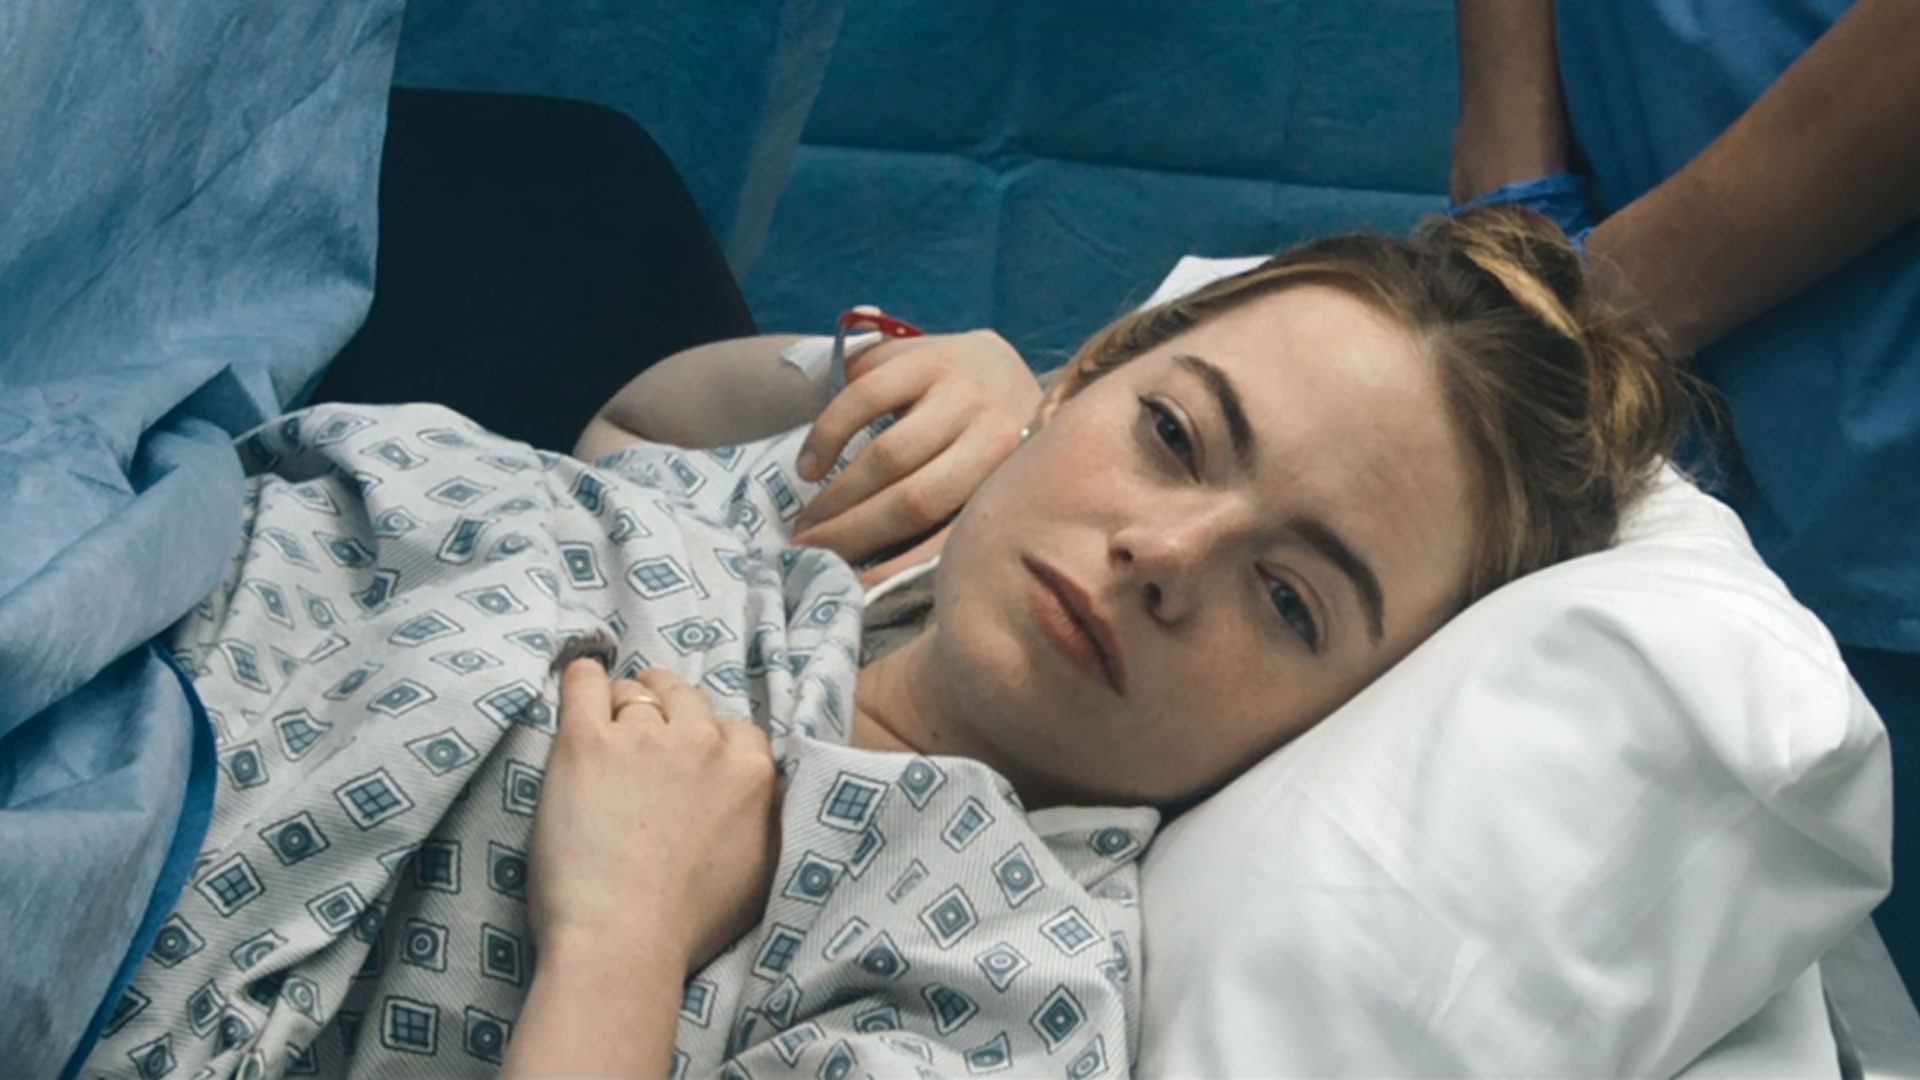 اما استون روی تخت بیمارستان خوابیده است در نمایی از سریال نفرین به کارگردانی نیتن فیلدر